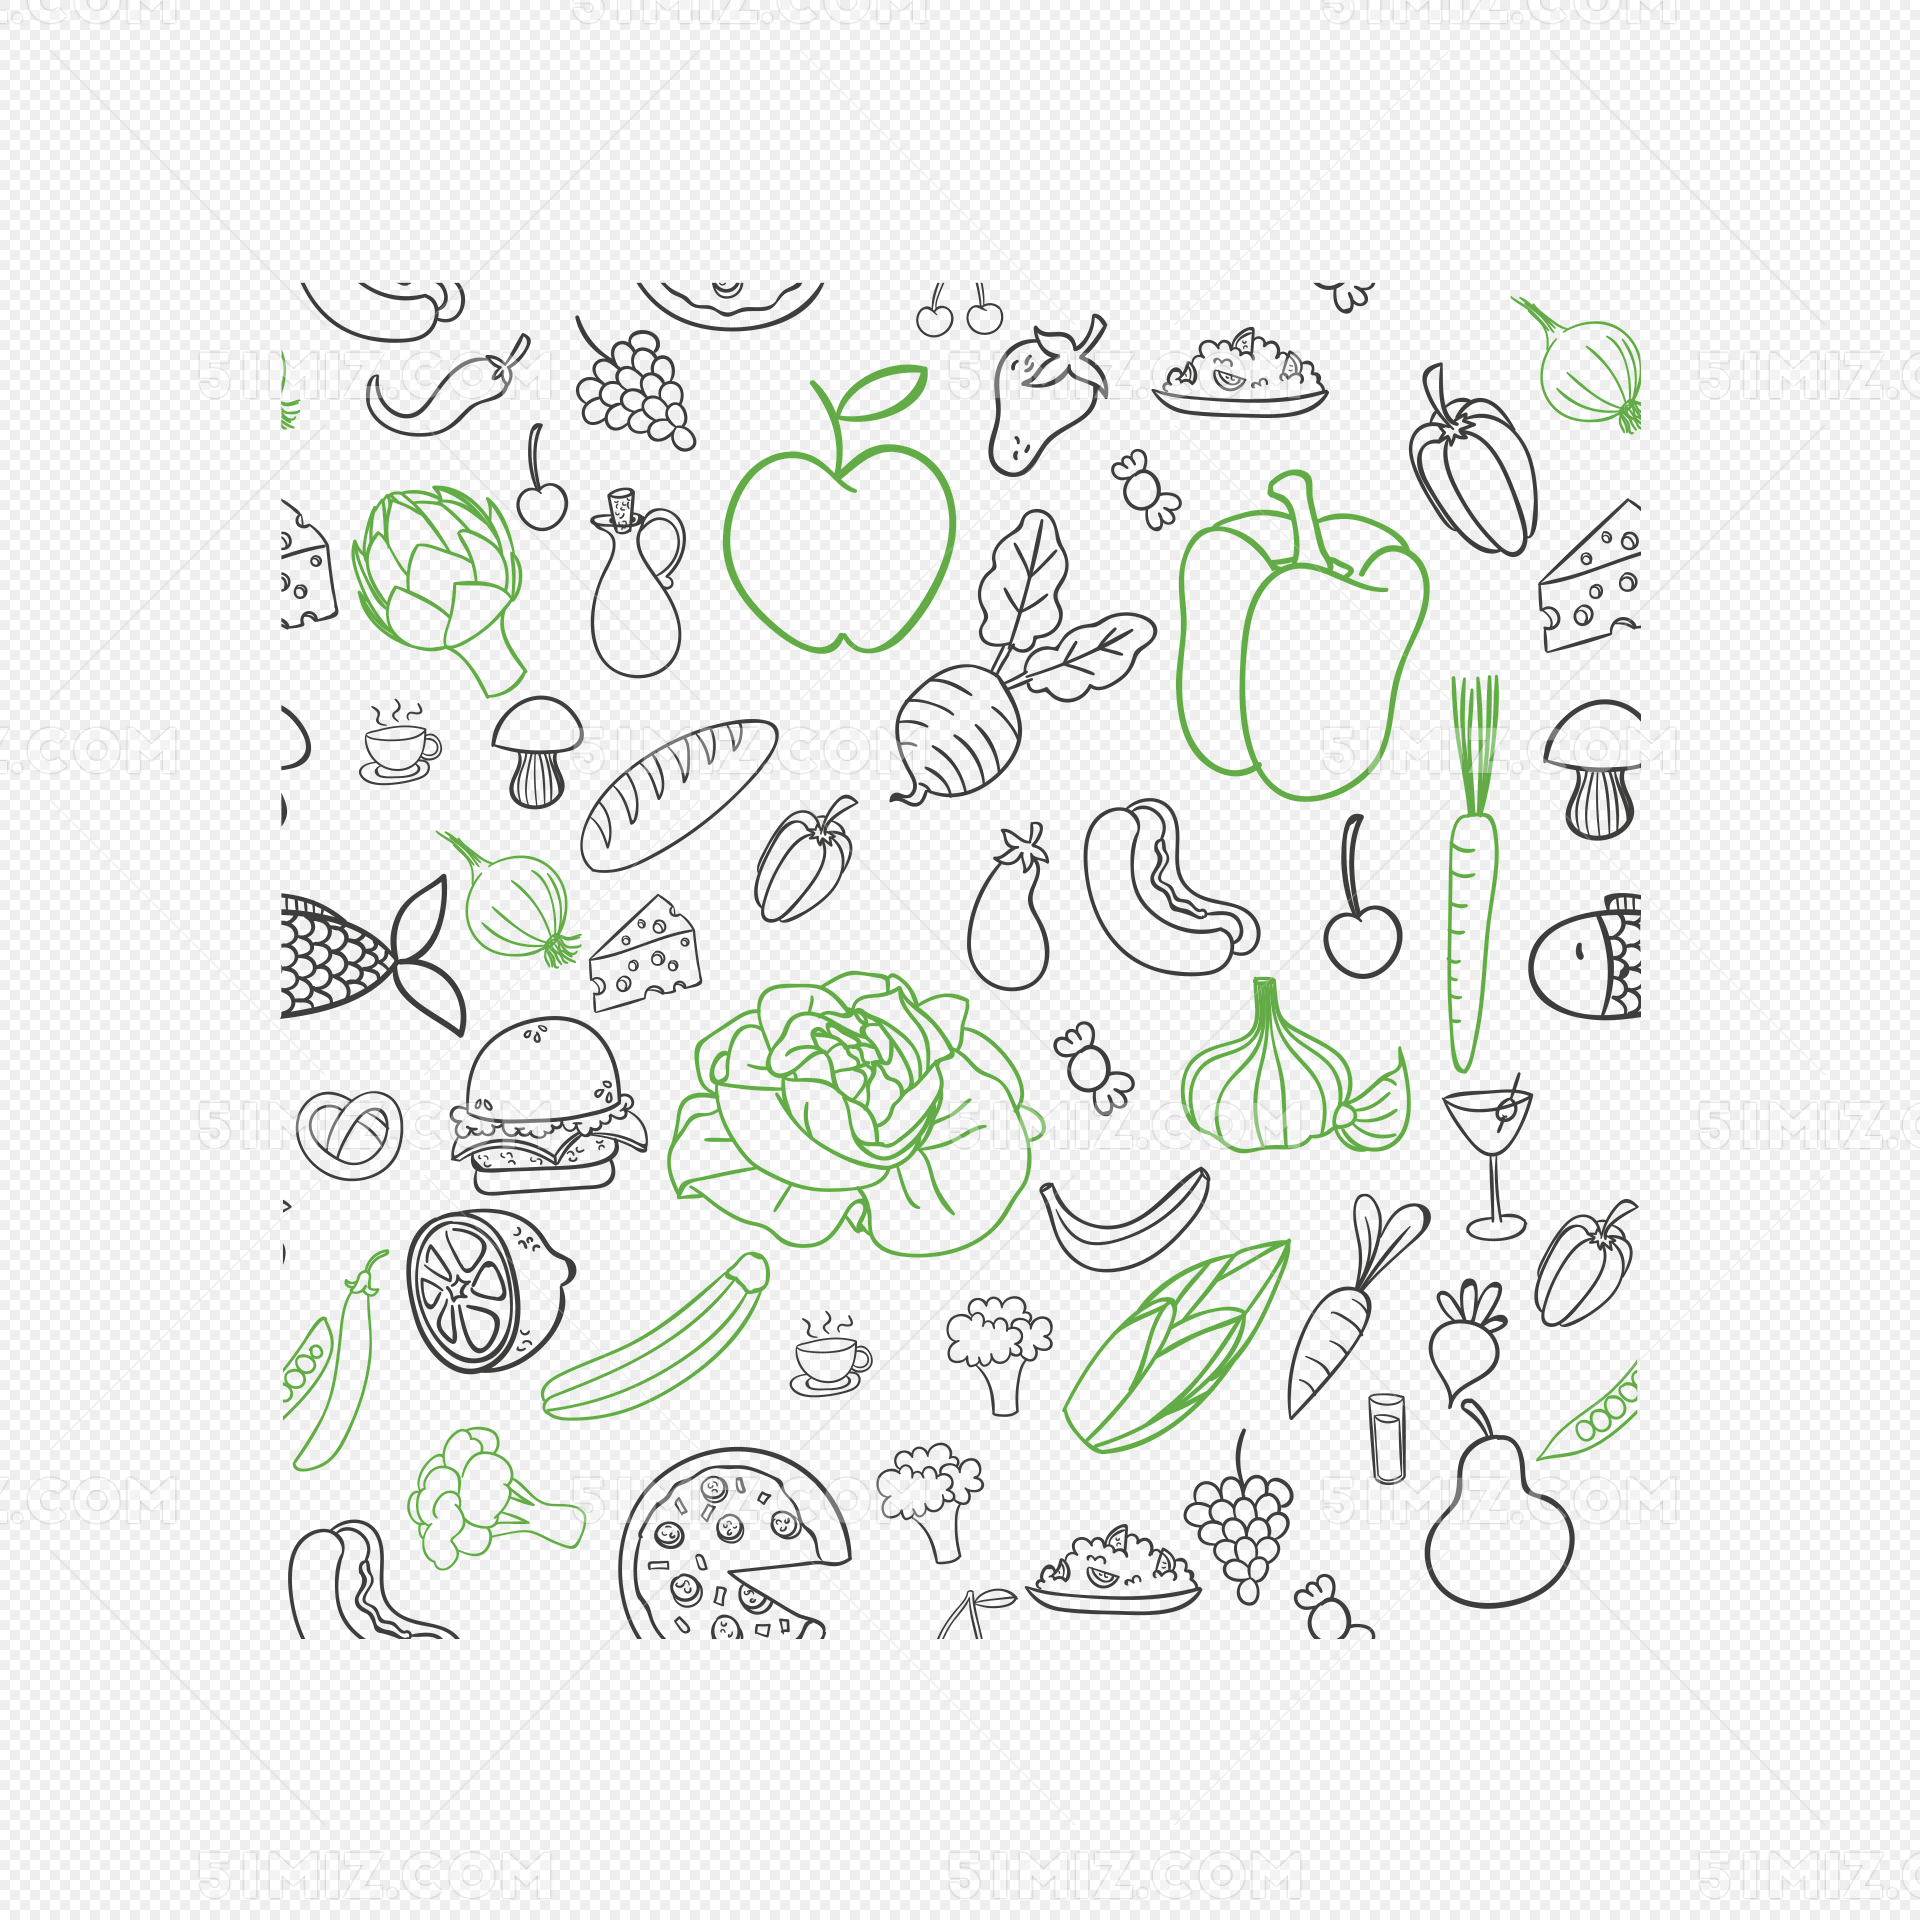 青菜的简笔画 青菜怎么画步骤-蔬菜简笔画-欣欣简笔画